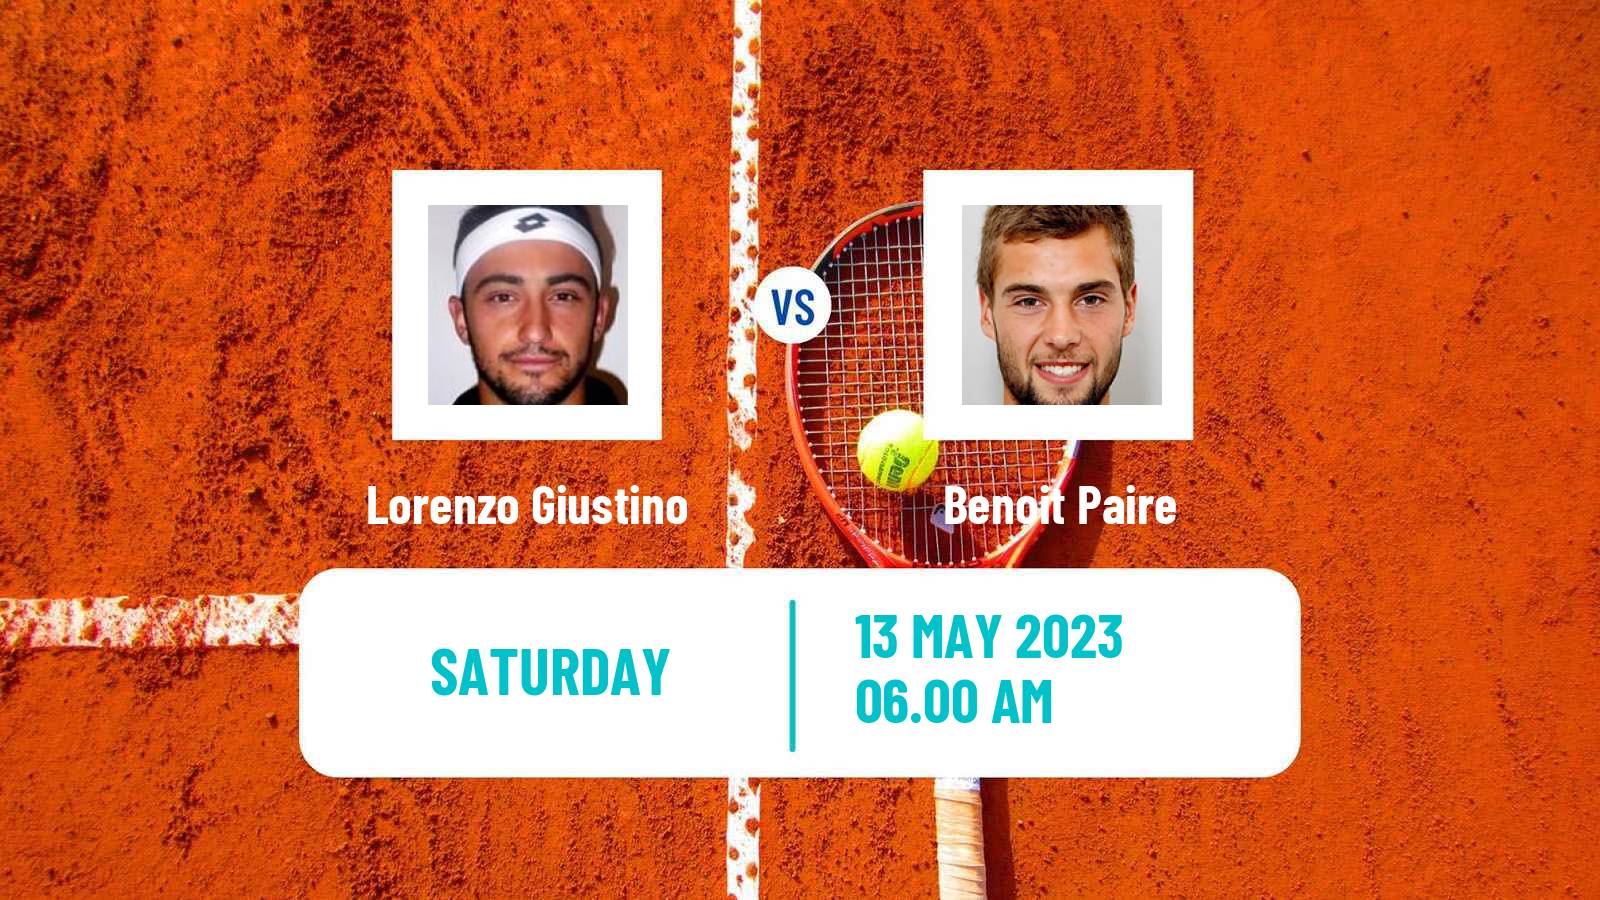 Tennis ATP Challenger Lorenzo Giustino - Benoit Paire